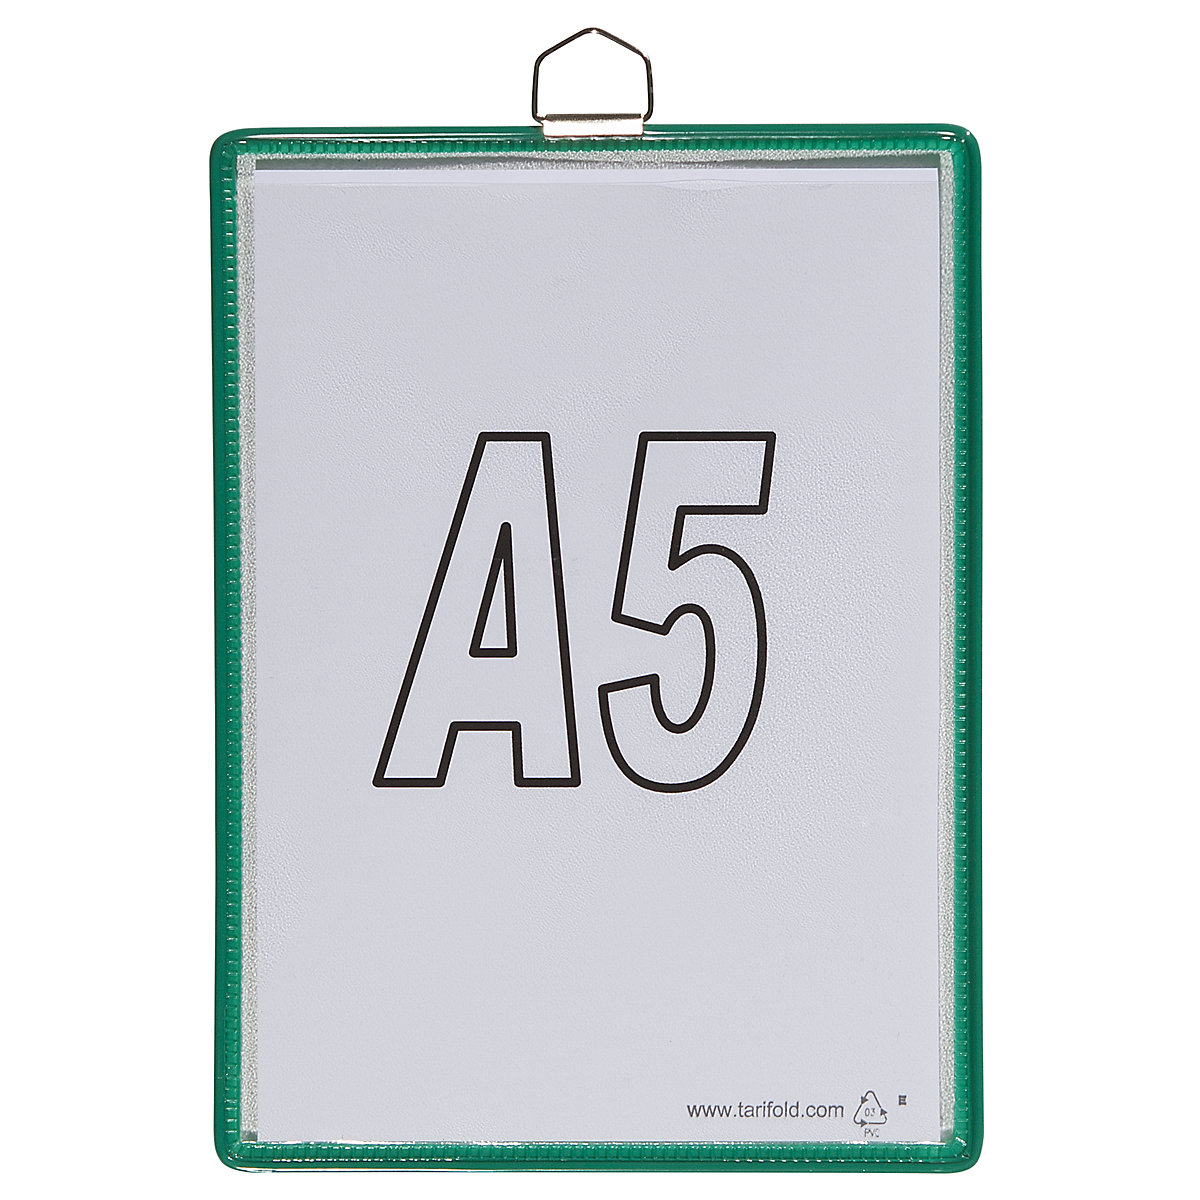 Bolsa transparente suspensa – Tarifold, para formato A5, verde, embalagem com 10 unidades-6